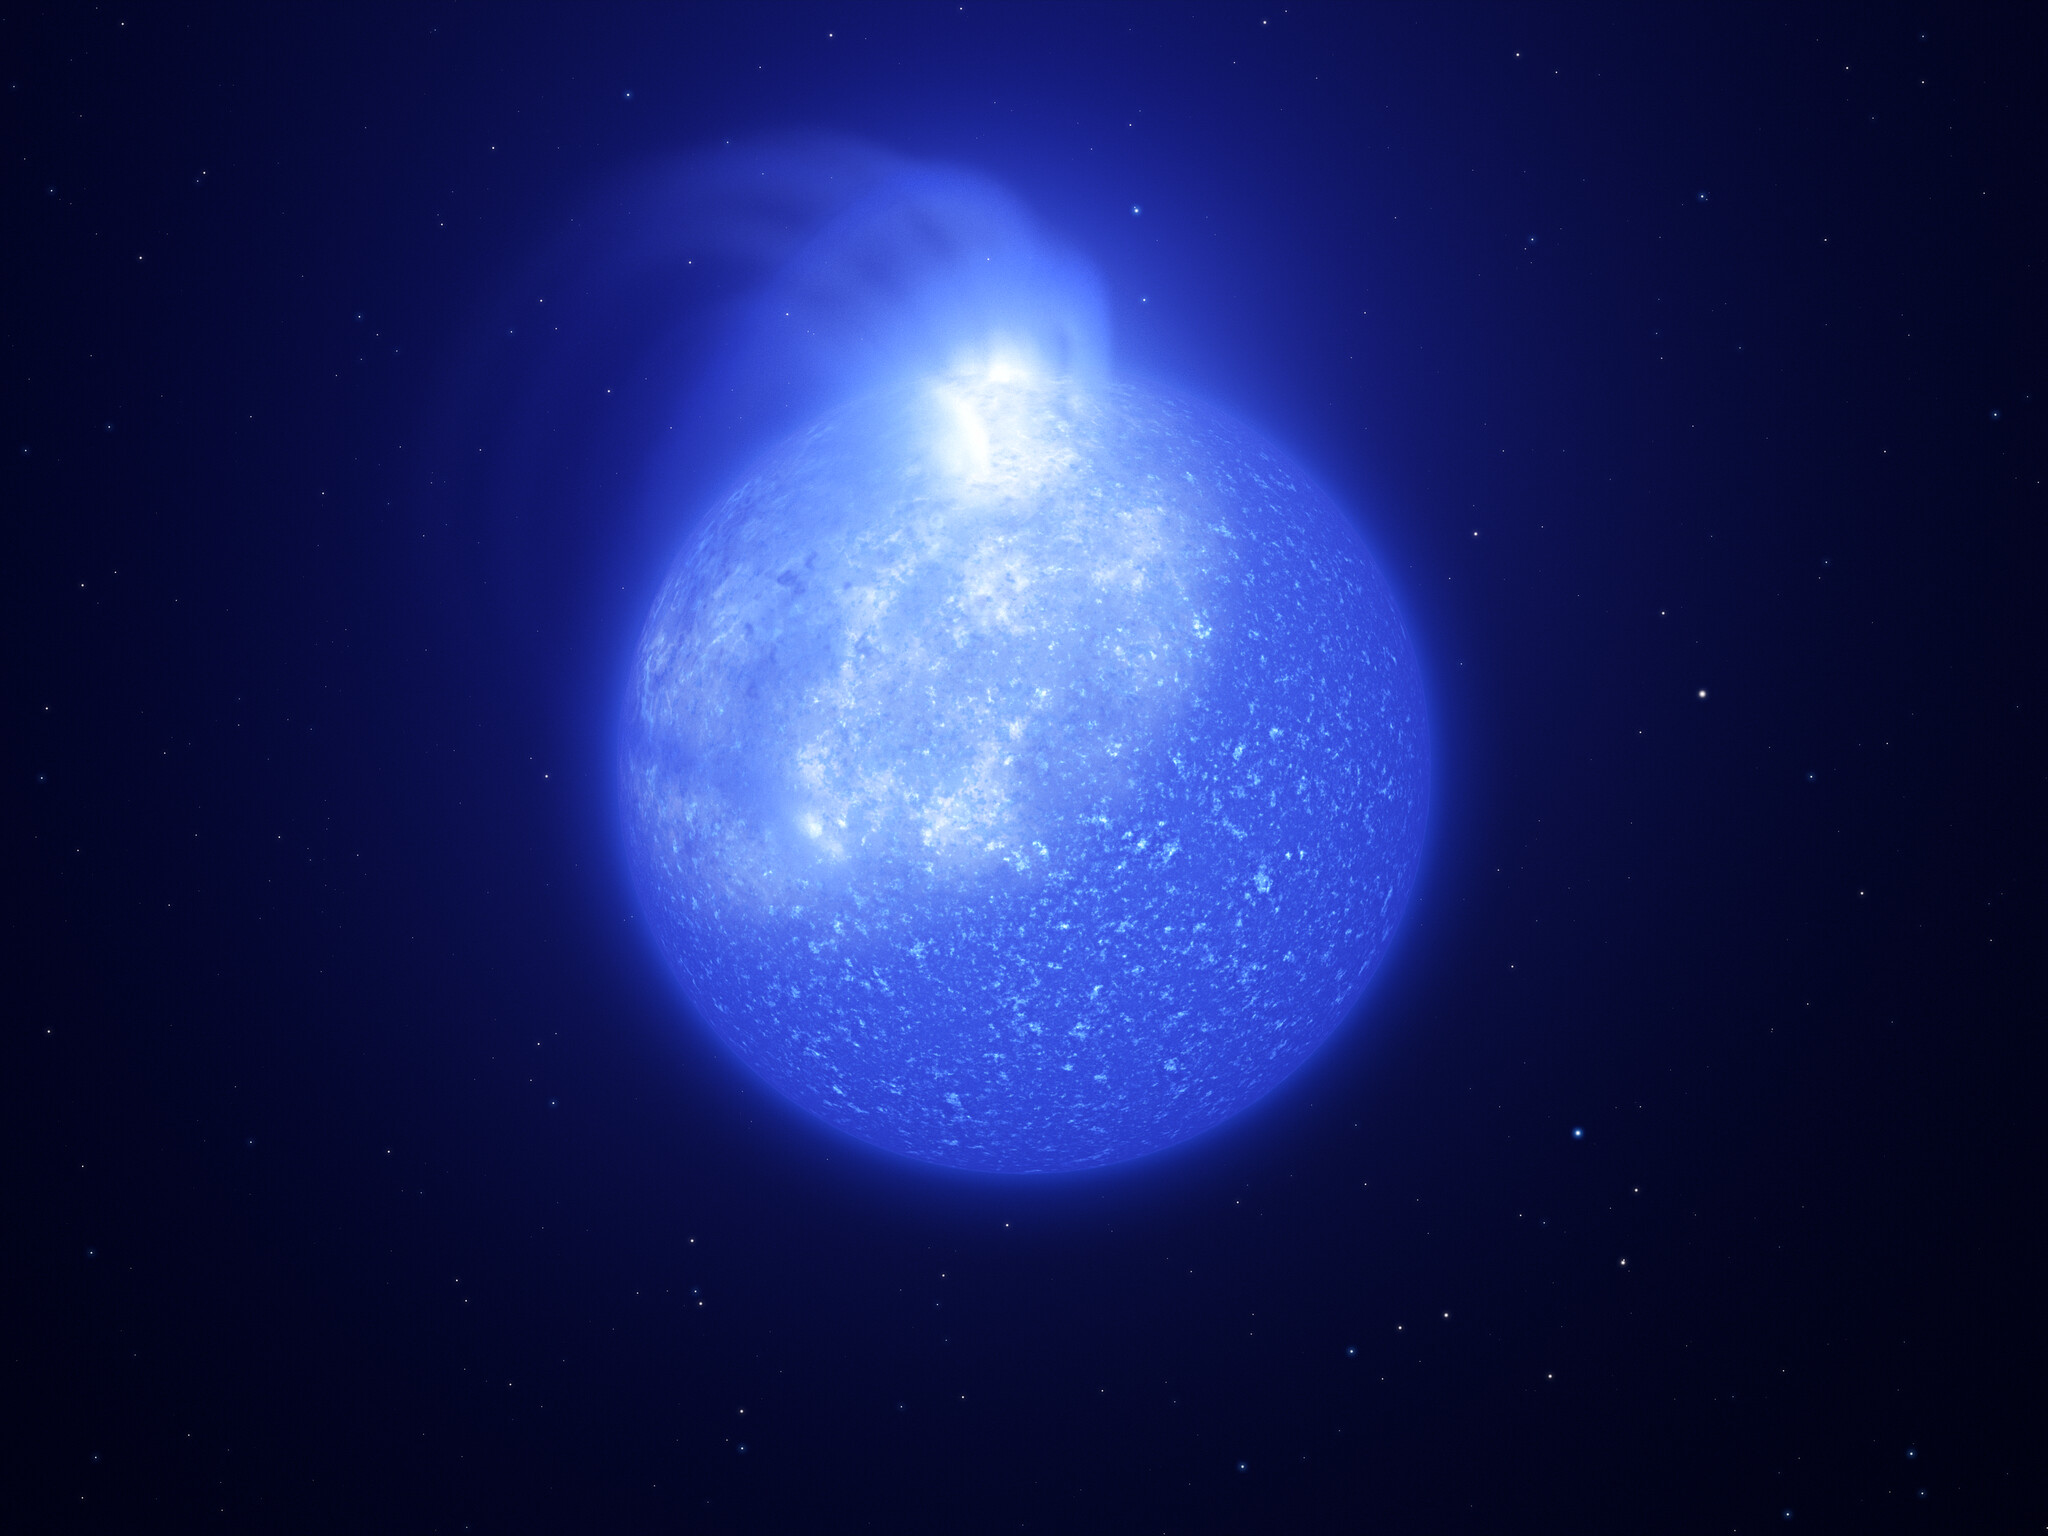 Les astronomes utilisant les télescopes de l'ESO ont découvert des taches géantes à la surface d'étoiles extrêmement chaudes cachées dans des amas stellaires. Ces étoiles sont appelées étoiles de la branche horizontale extrême. Cette image montre une représentation artistique de ce à quoi pourrait ressembler l'une de ces étoiles et sa tache blanchâtre géante. La tache est brillante, occupe un quart de la surface de l'étoile et est causée par des champs magnétiques. Lorsque l'étoile tourne, la tache à sa surface va et vient, provoquant des changements visibles de sa luminosité. © ESO/L. Calçada, INAF-Padua/S. Zaggia